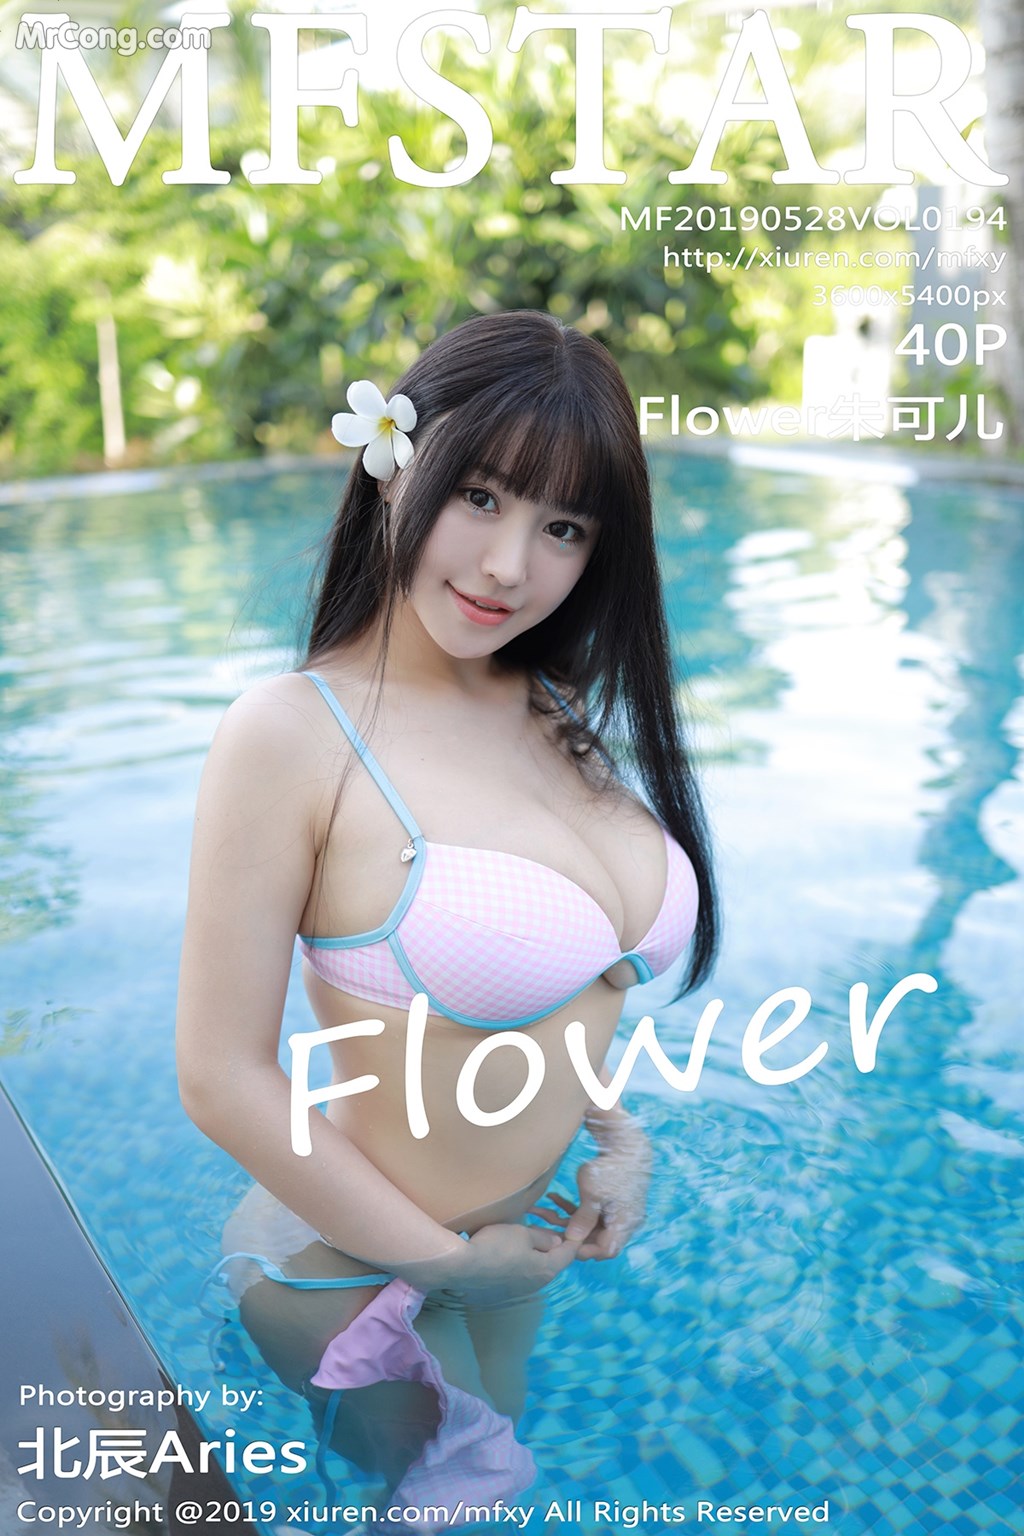 MFStar Vol.194: Zhu Ke Er (Flower 朱 可 儿) (41 pictures) photo 1-0